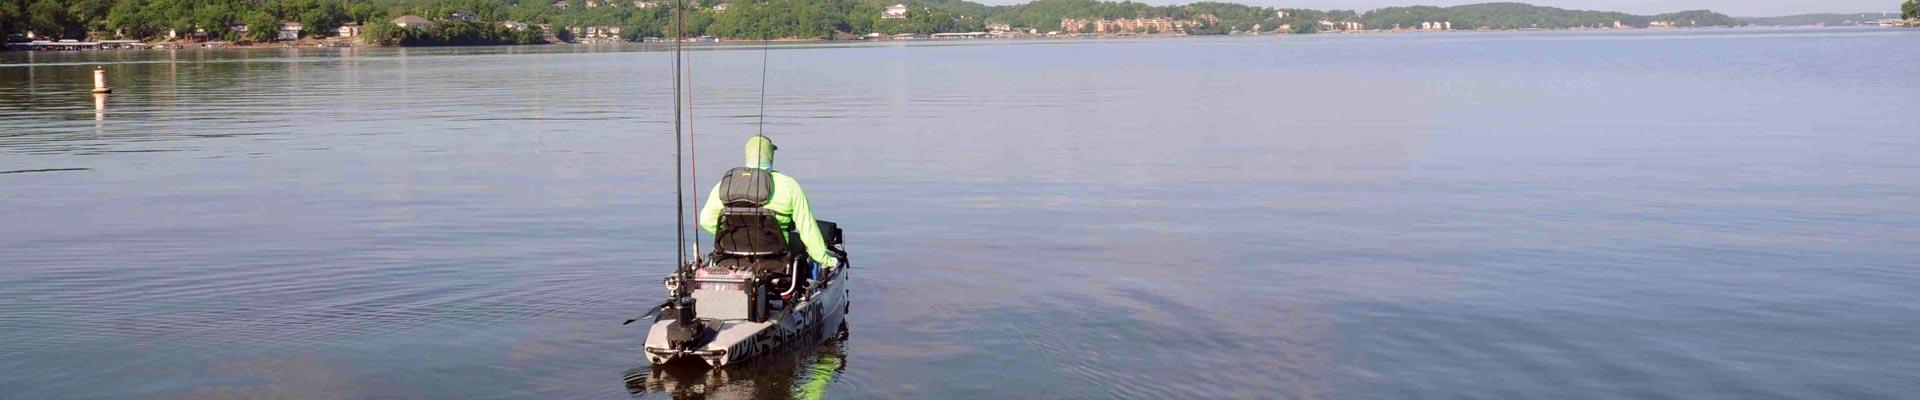 Kayak fishing on big lakes